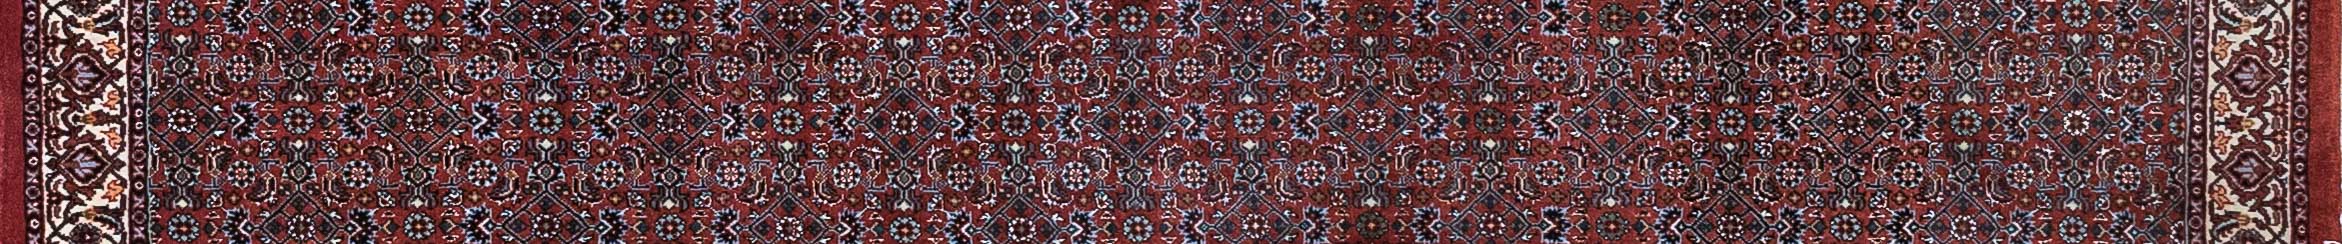 Bidjar Persian Carpet Rug N1Carpet Canada Montreal Tapis Persan 950